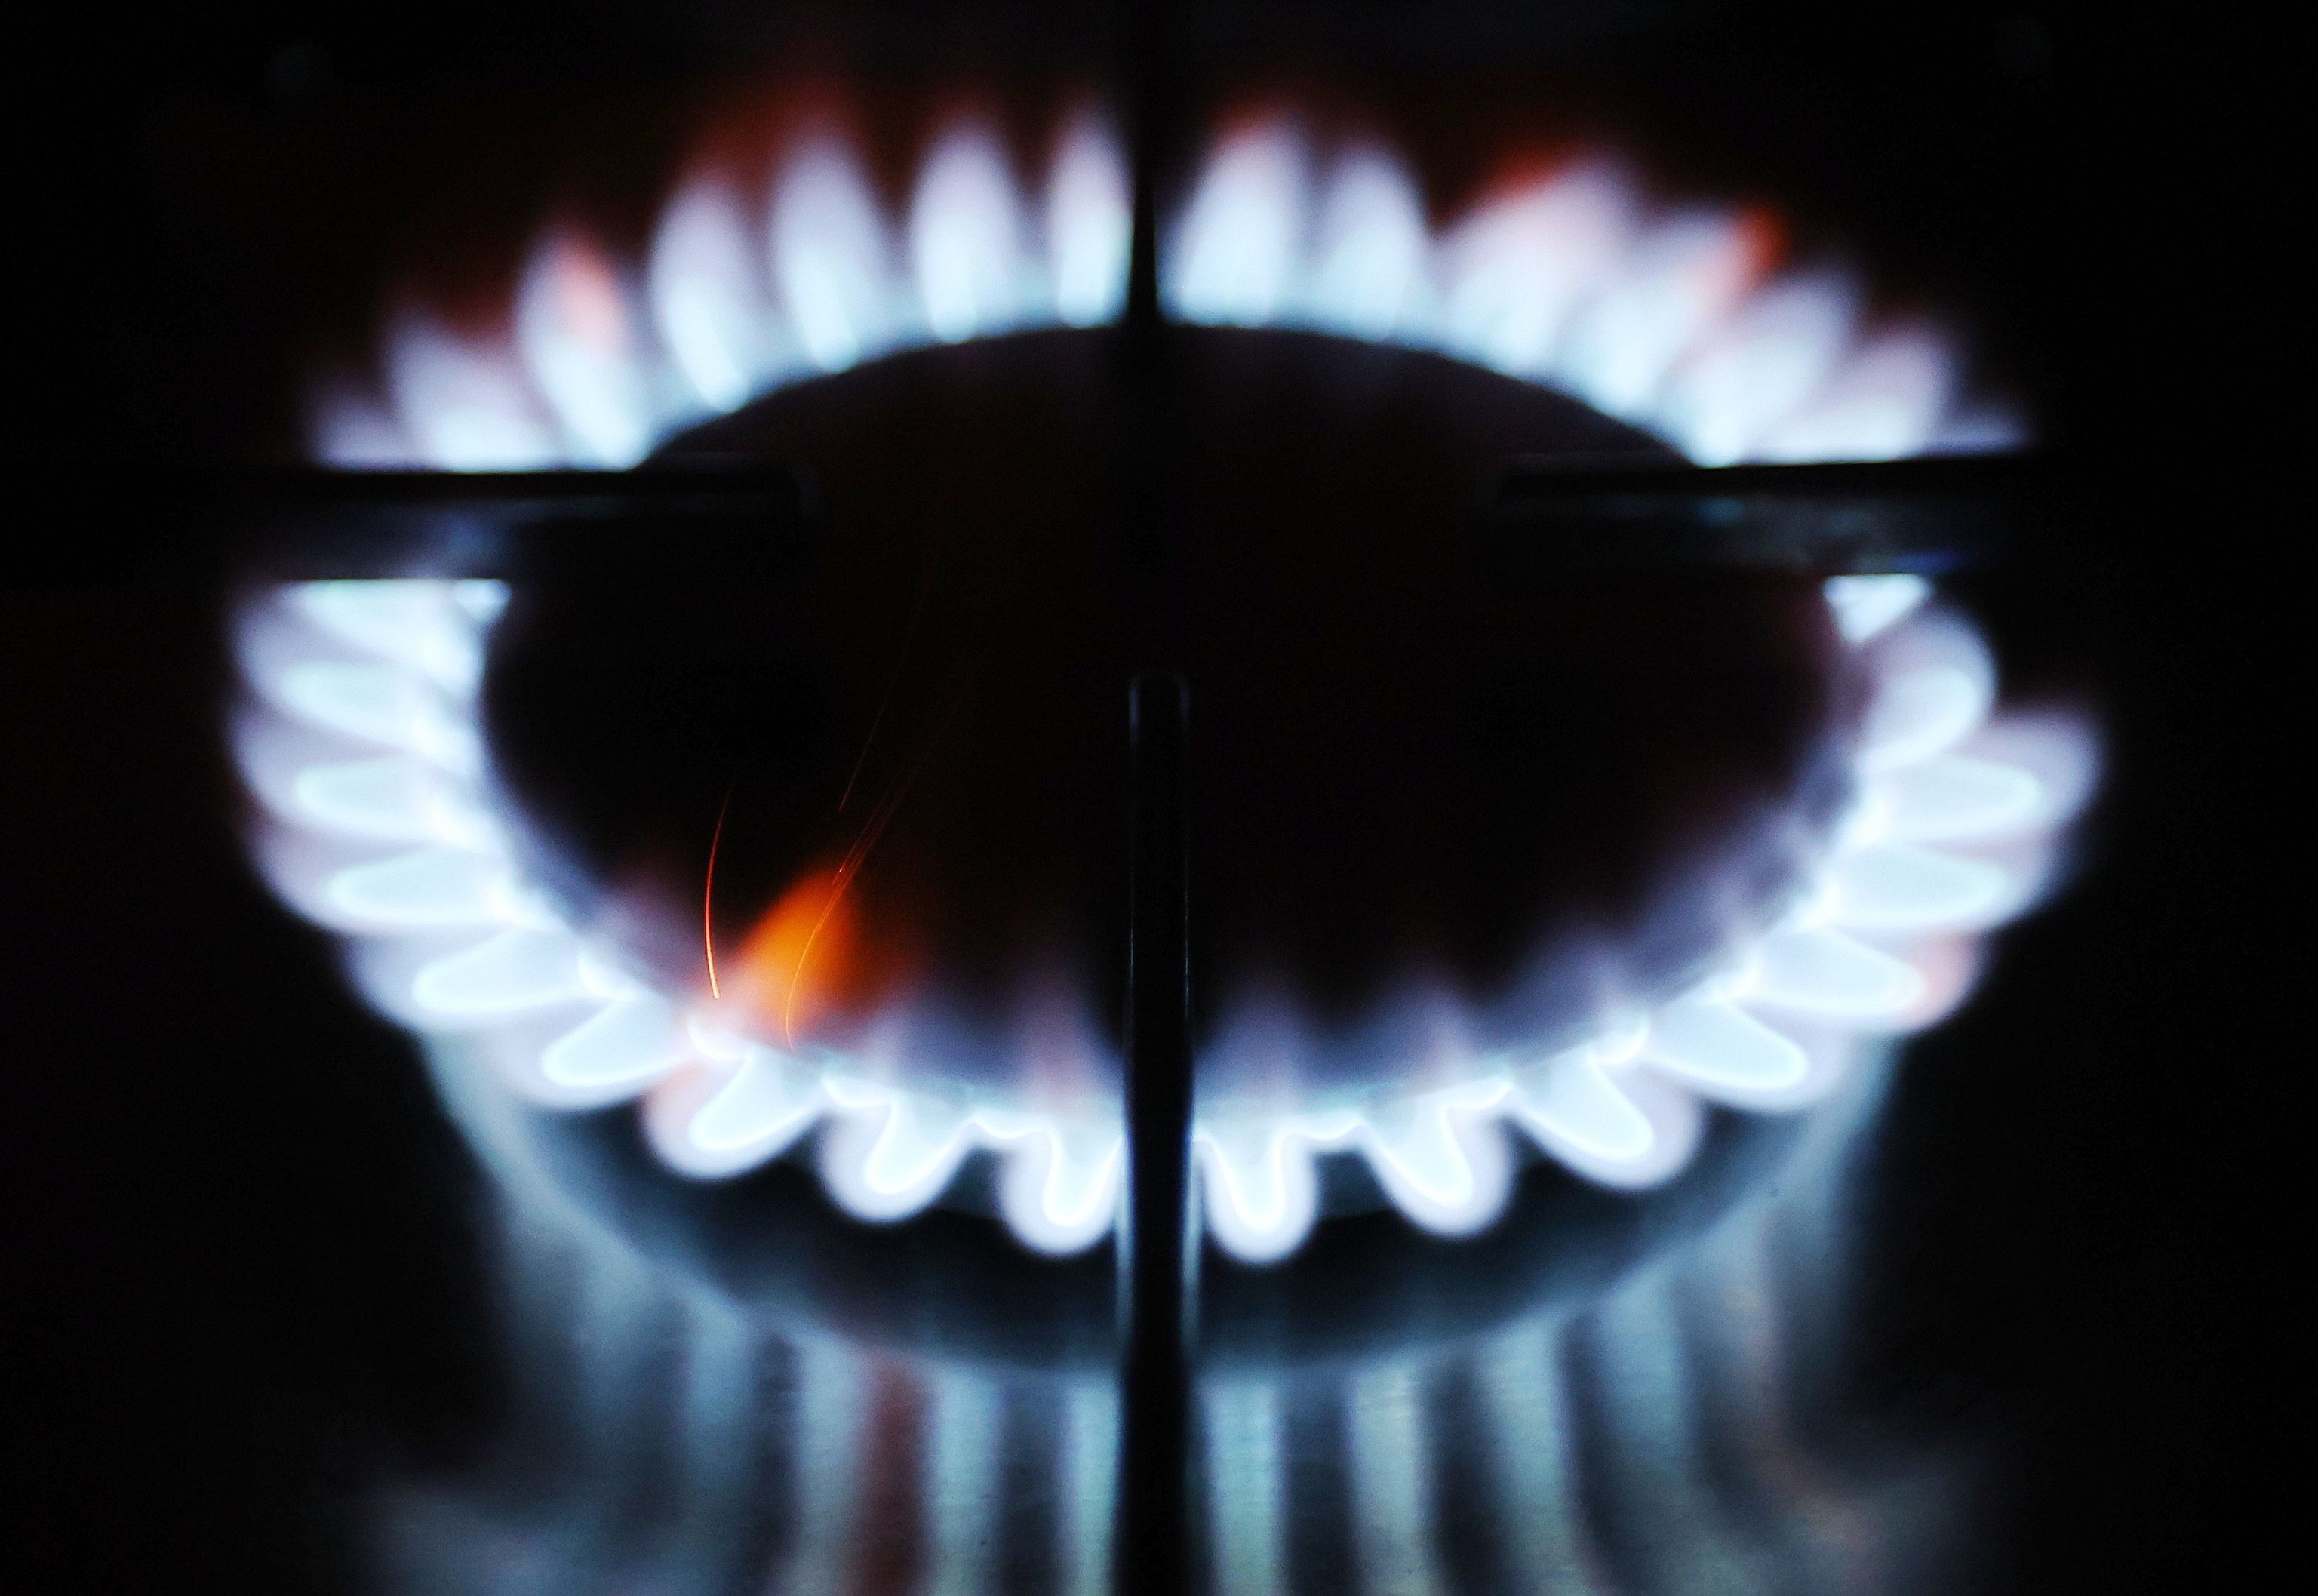 La tarifa del gas regulada sube un 8,19% de media a partir del 1 de enero